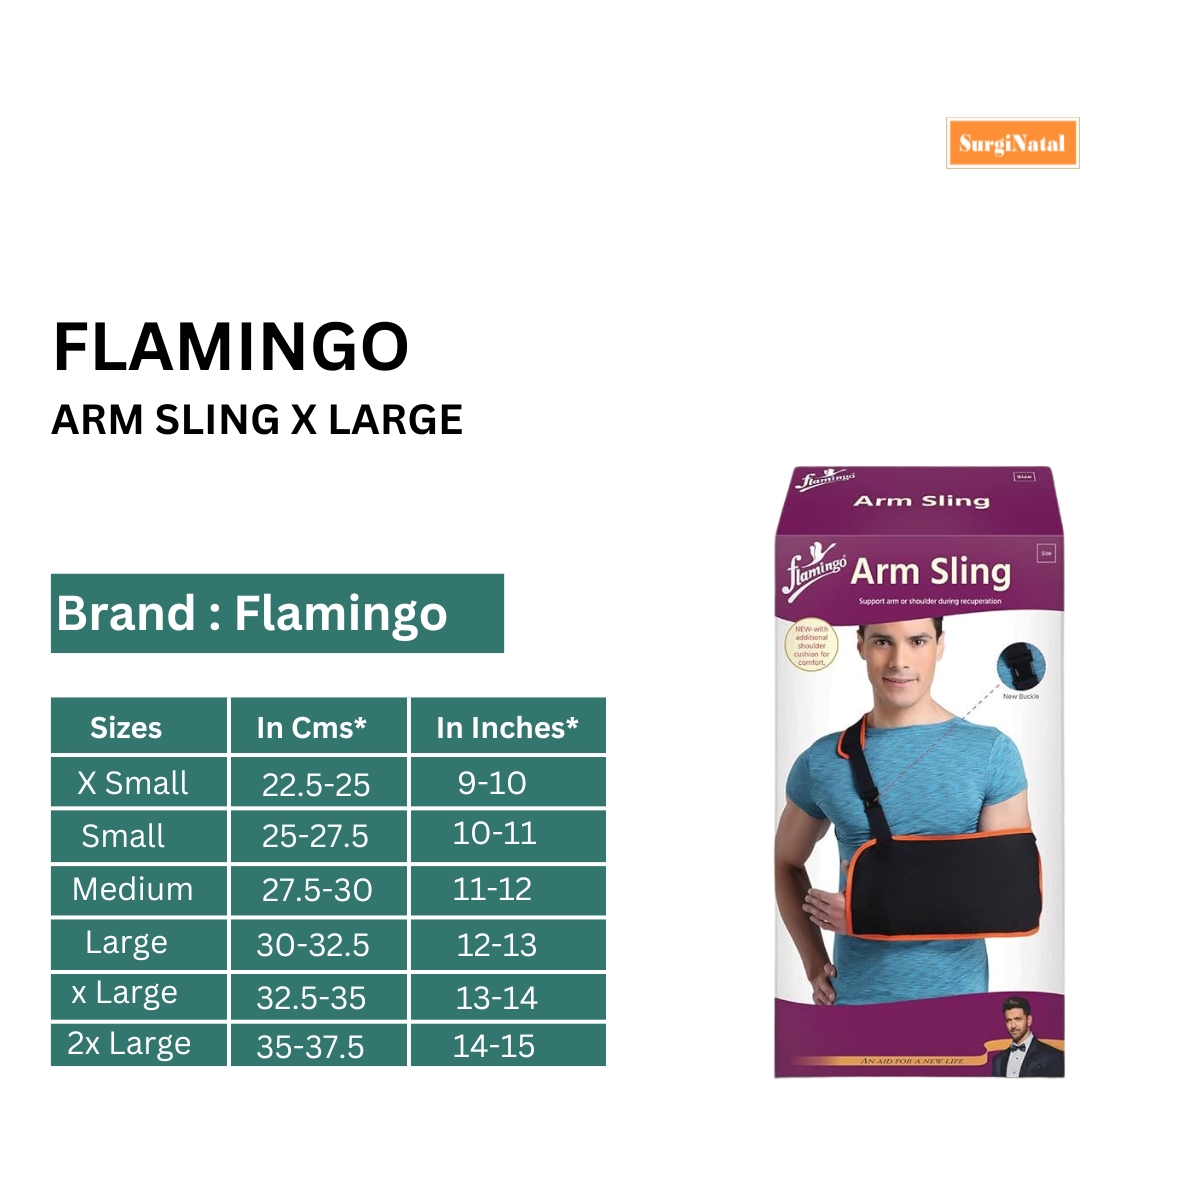 flamingo arm sling xlarge